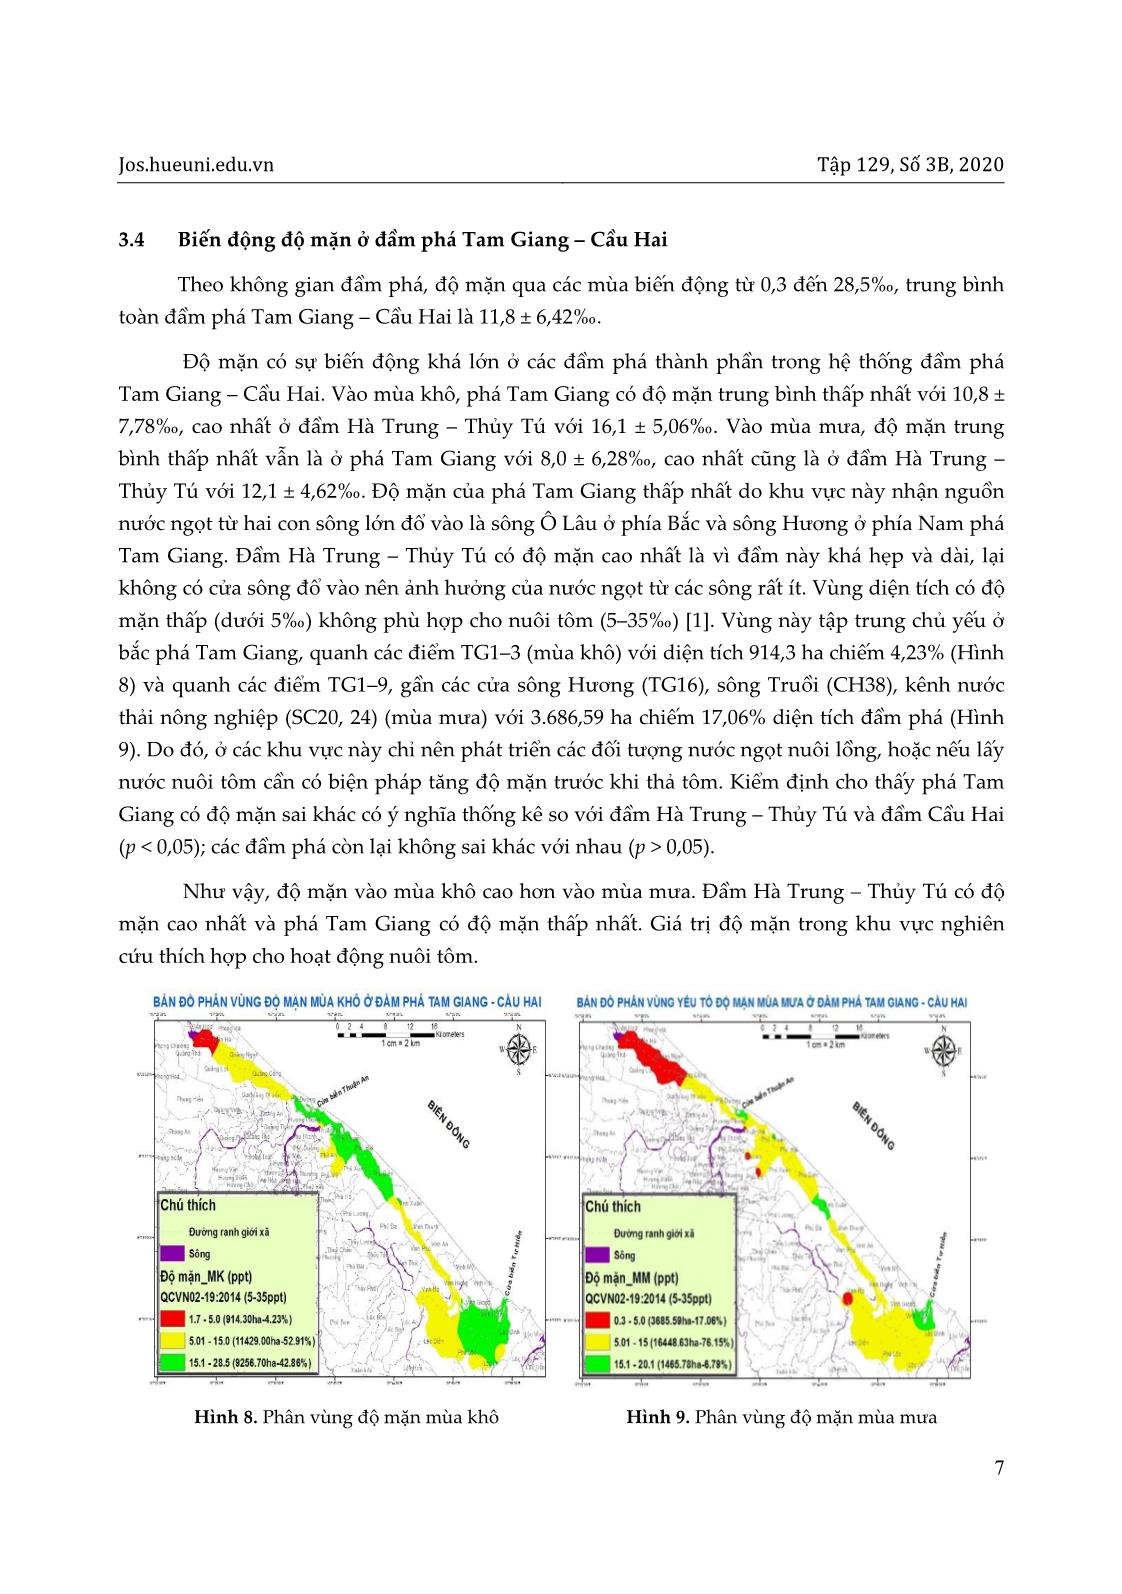 Phân vùng chất lượng nước cho nuôi tôm ở đầm phá Tam Giang – Cầu Hai, tỉnh Thừa Thiên Huế với sự hỗ trợ của GIS trang 7